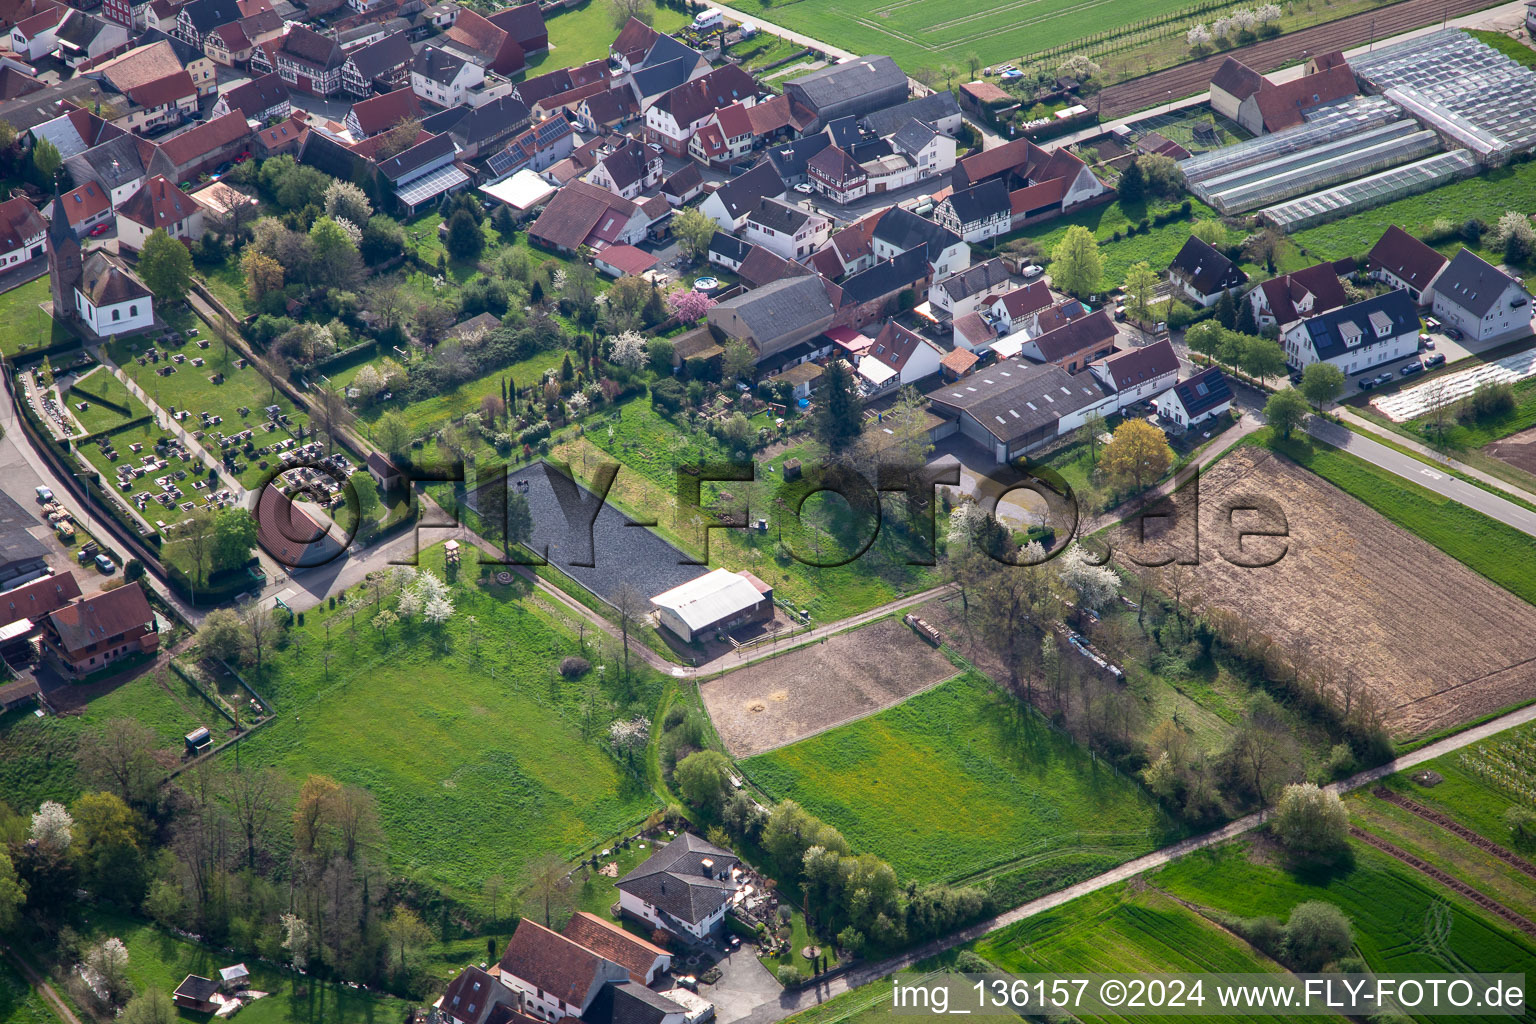 Vue aérienne de Installation équestre au cimetière à Winden dans le département Rhénanie-Palatinat, Allemagne